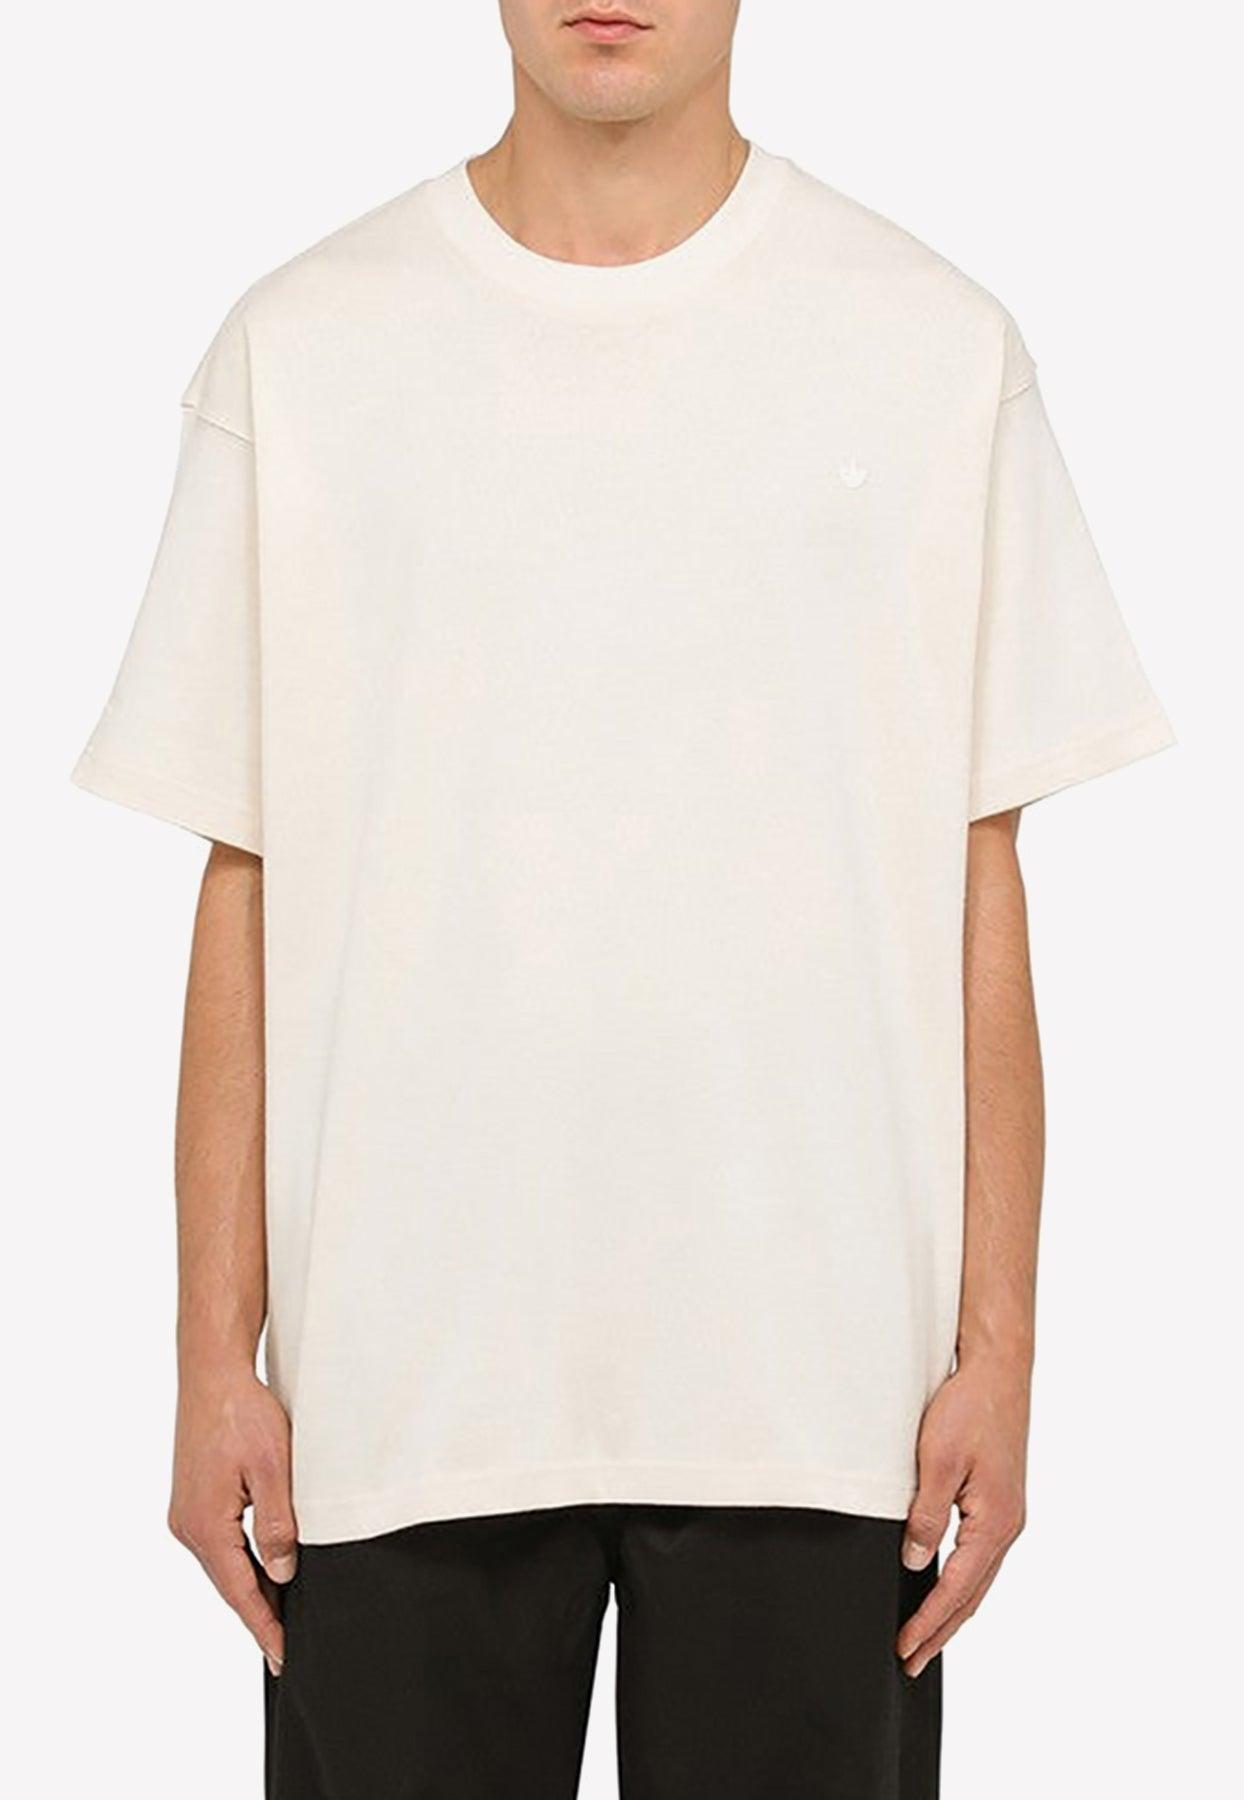 Contempo | T-shirt Logo Originals Lyst Adicolor in Men White for adidas